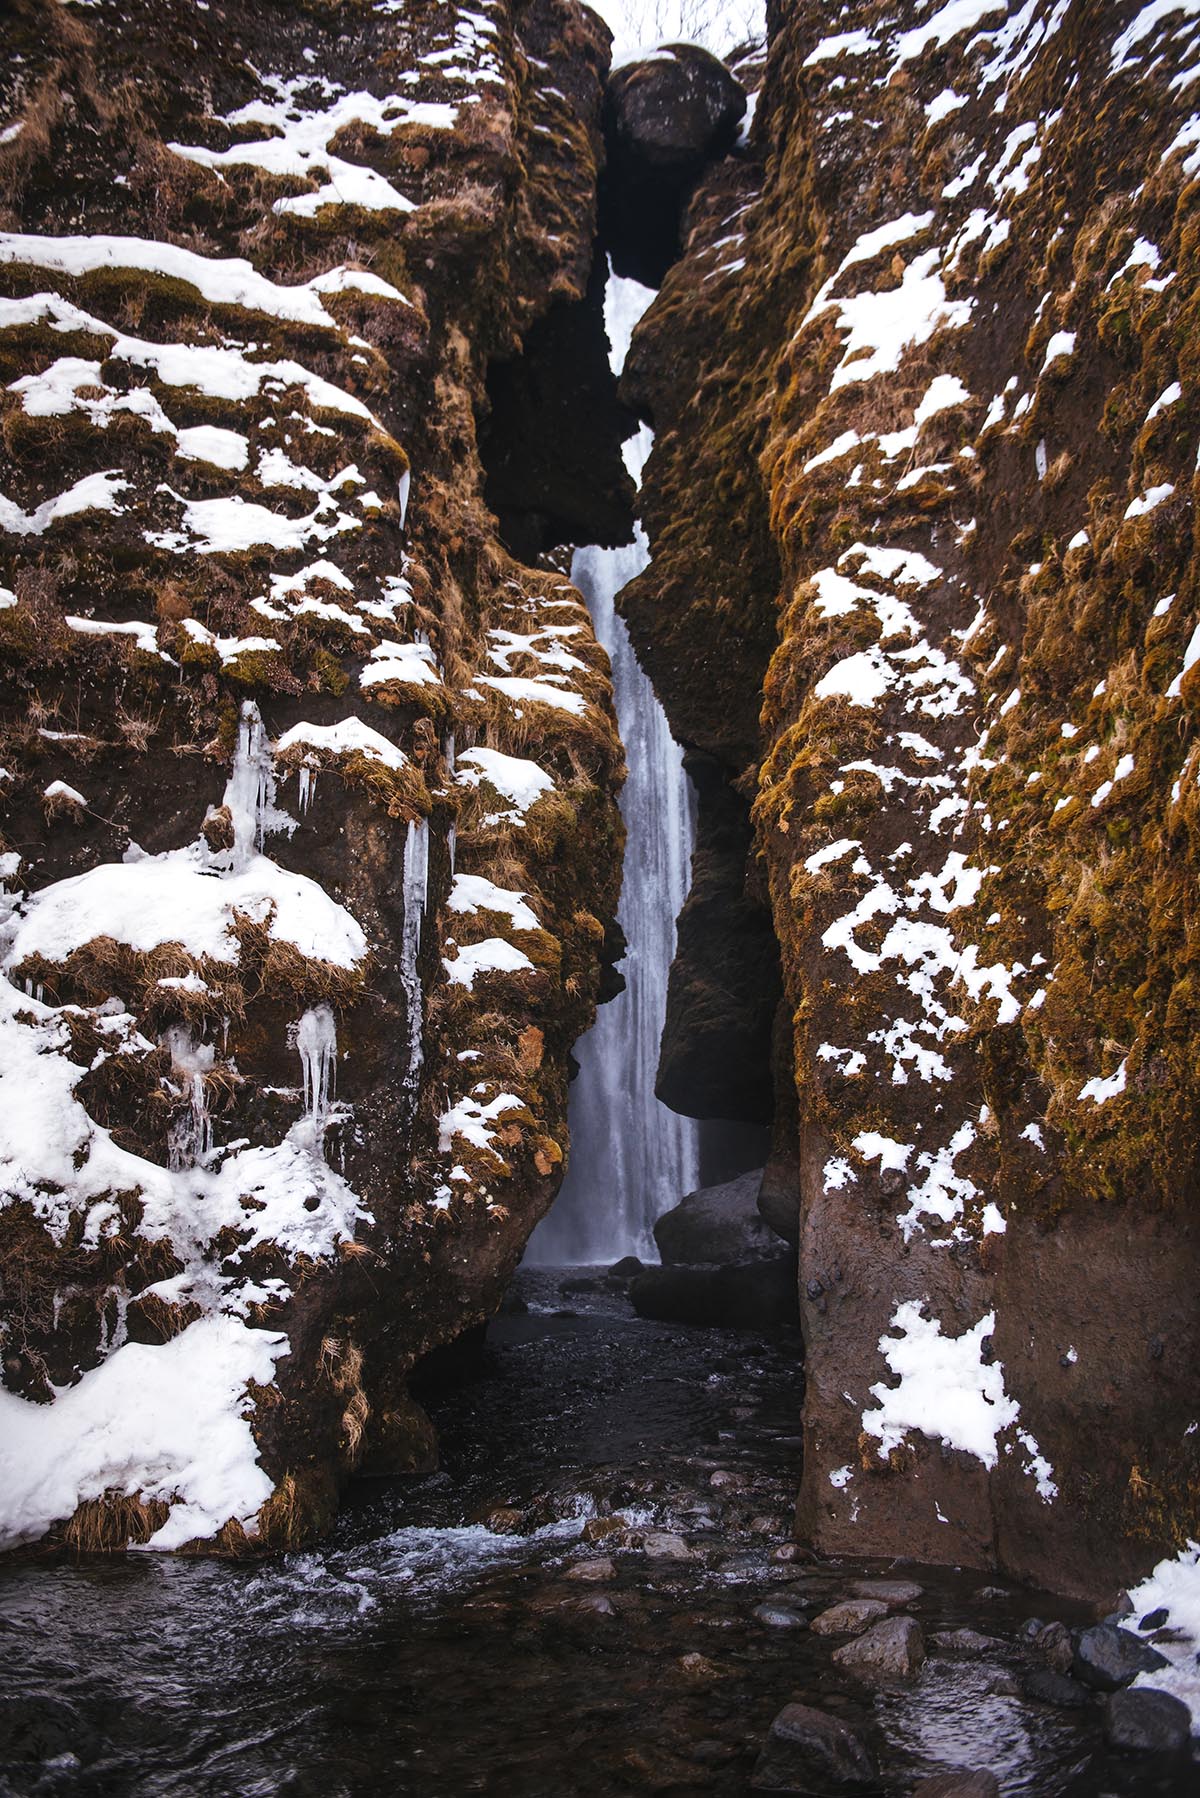 Gljúfrabúi hidden waterfall